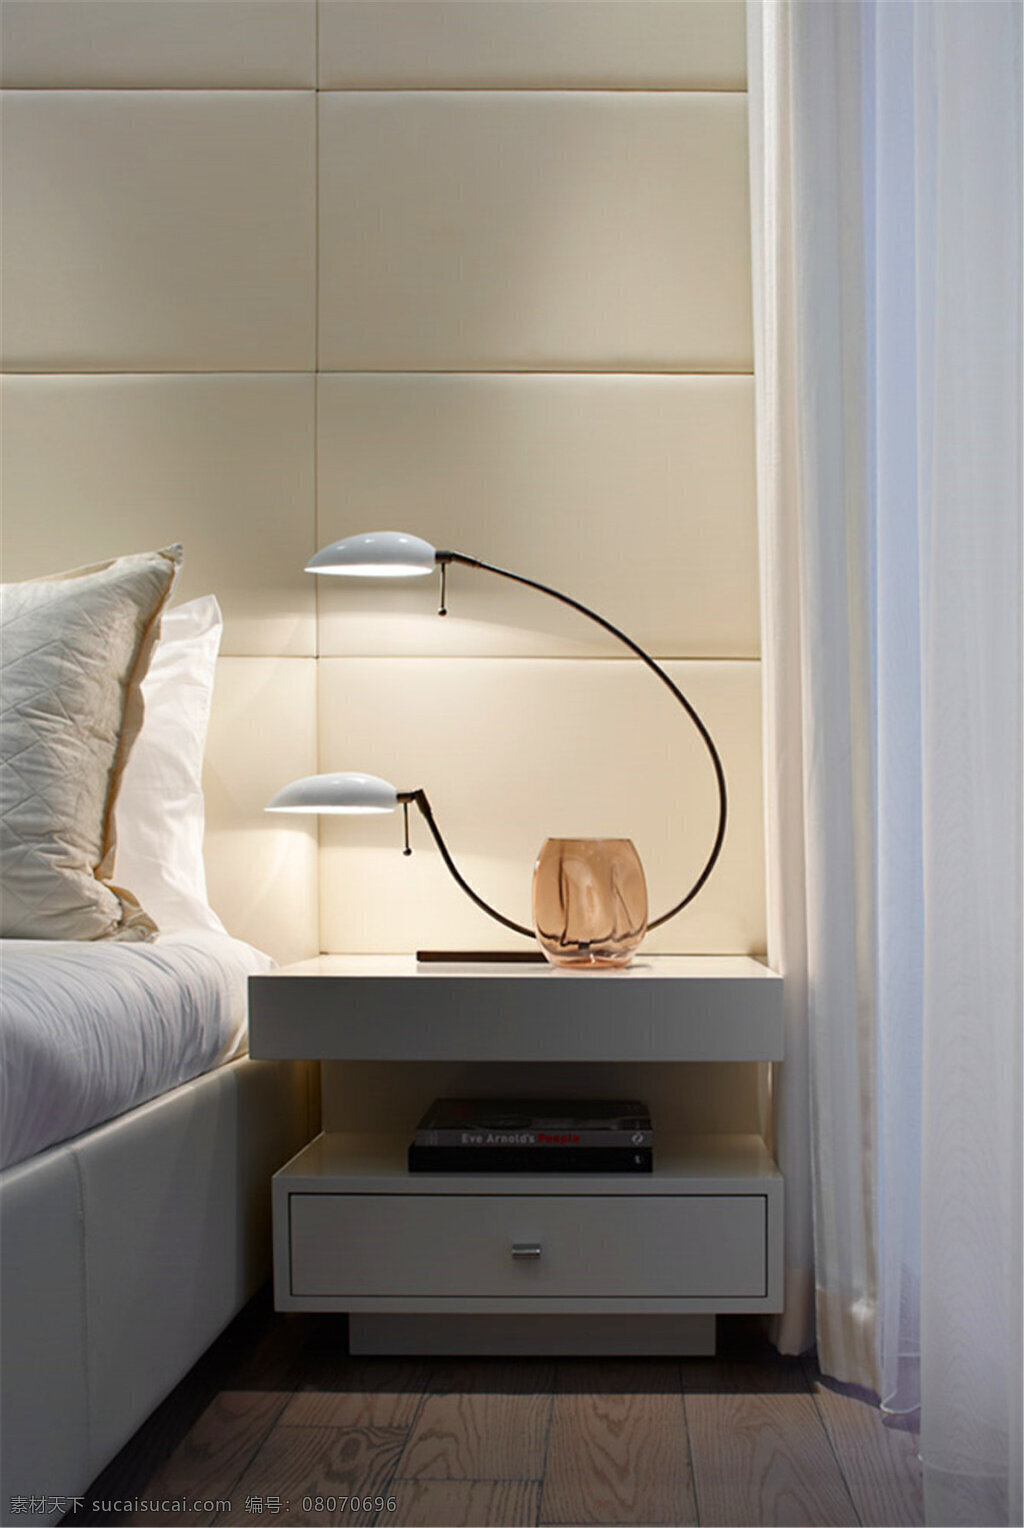 现代 清新 卧室 白色 窗帘 室内装修 效果图 卧室装修 木地板 白色床头柜 异形台灯